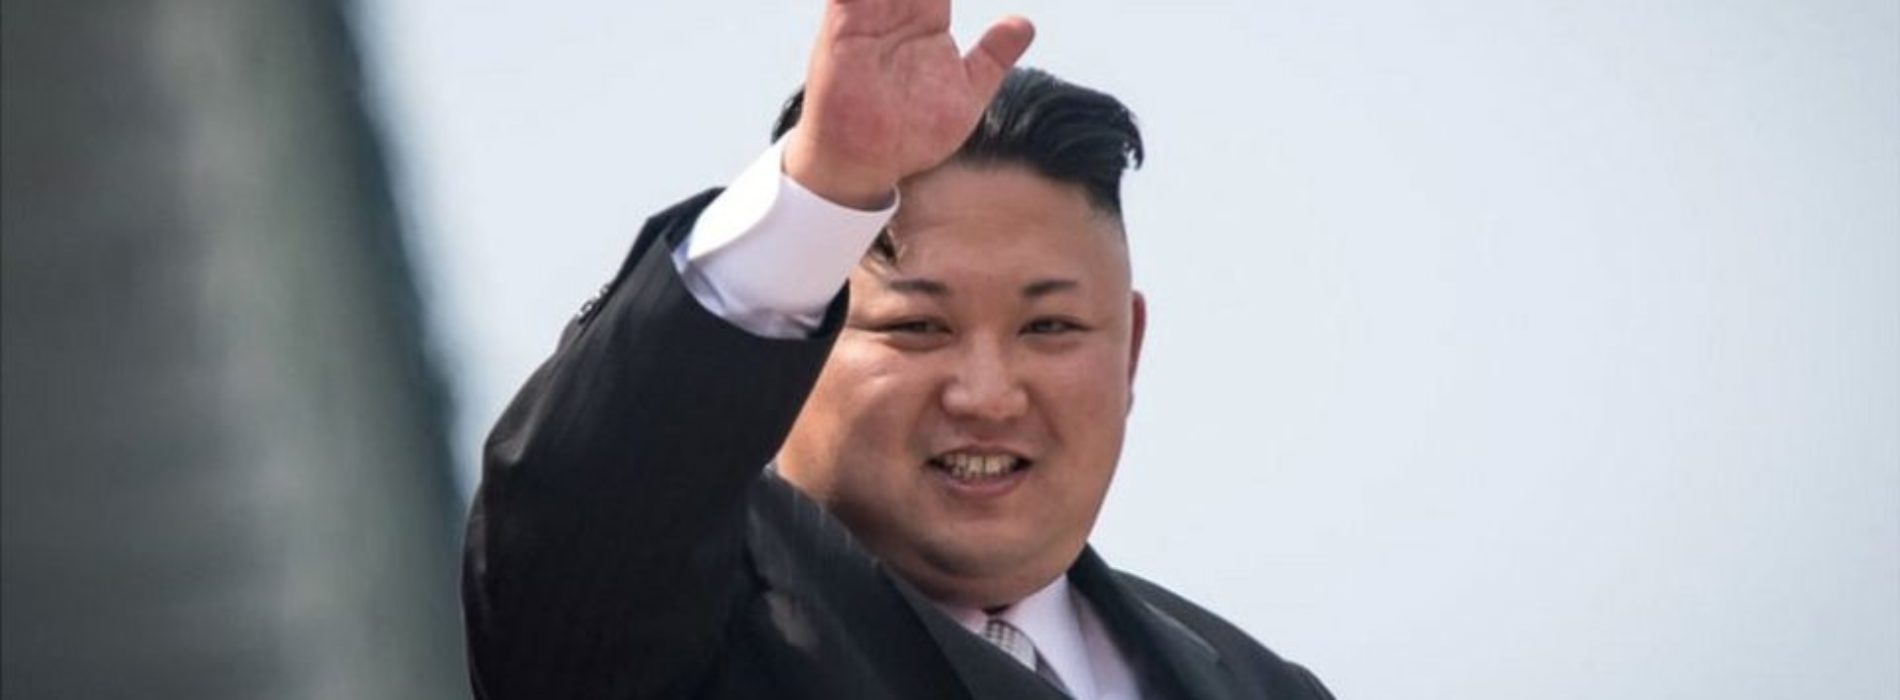 Norcorea anuncia la suspensión de pruebas nucleares y de
misiles